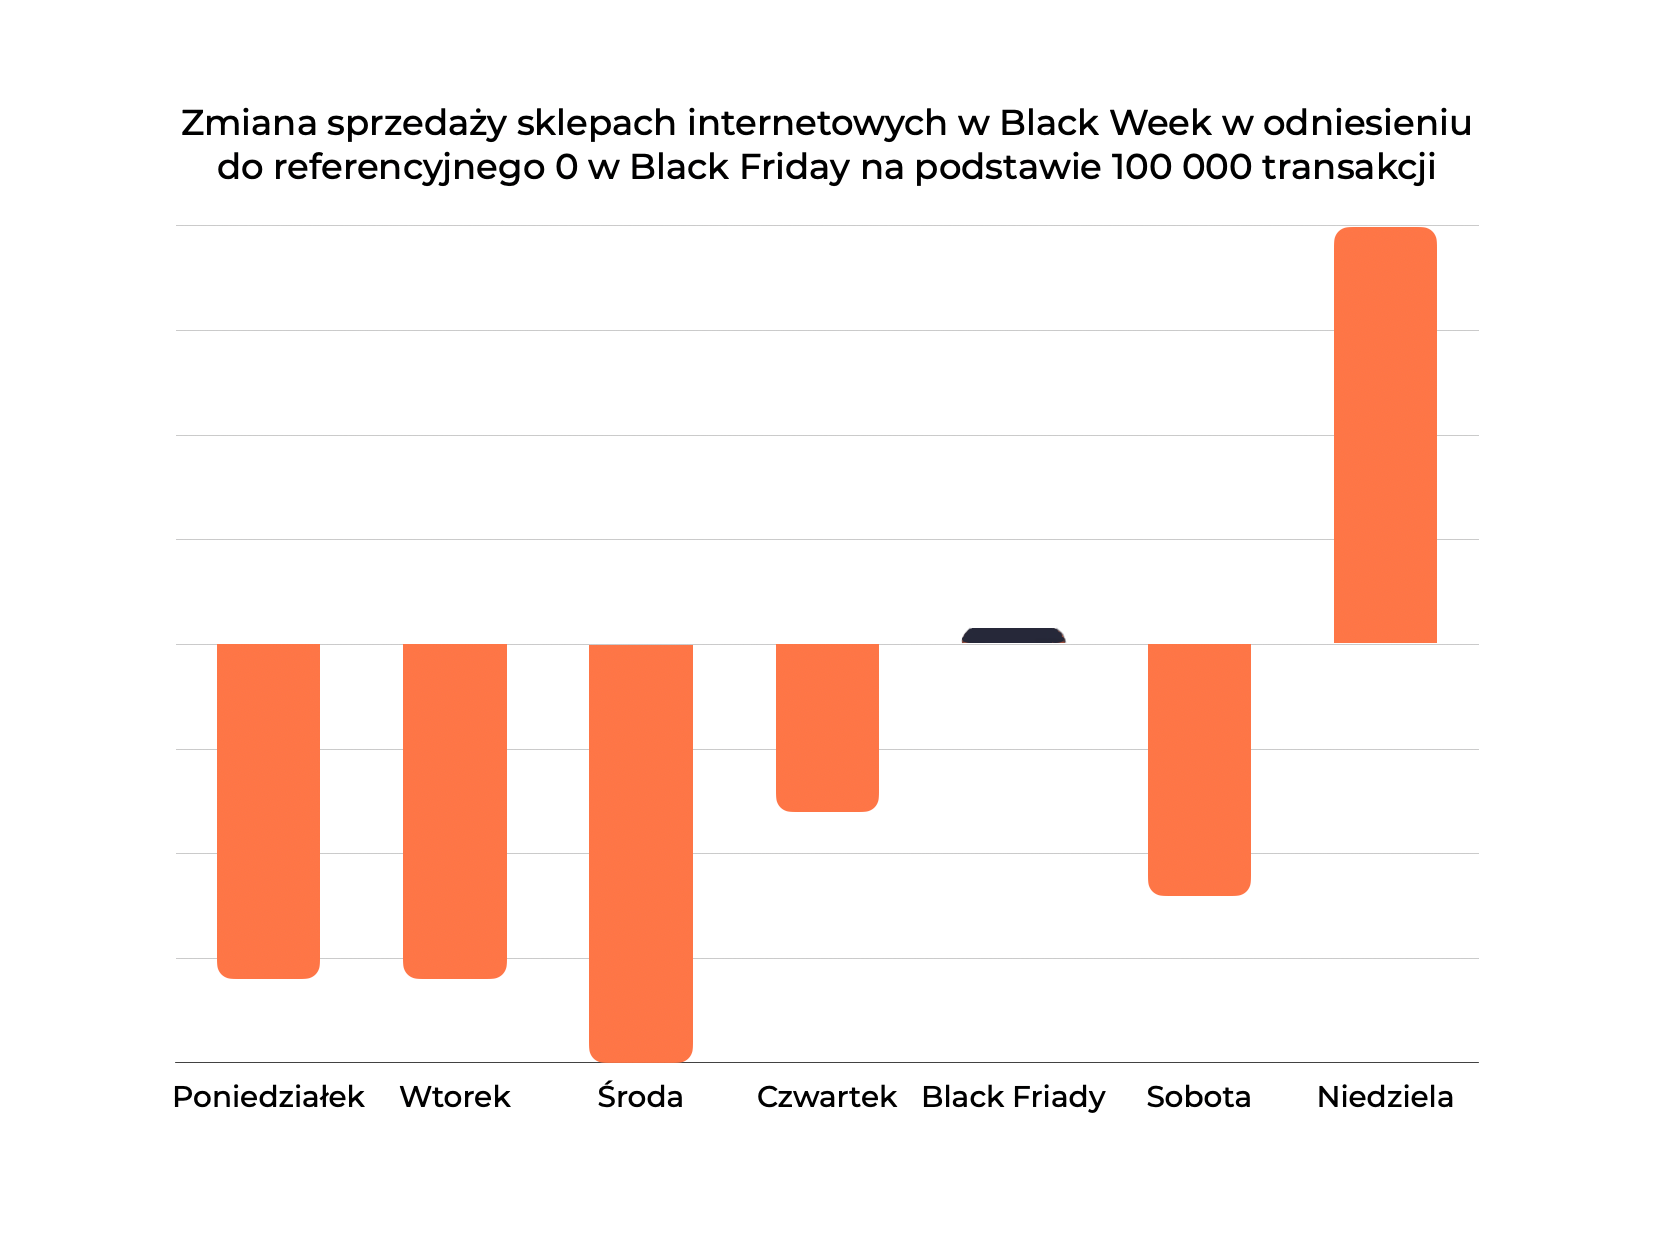 Insight 1: Na podstawie próby badawczej 100 000 transakcji w ciągu Black Week, okazuje się, że w Polsce najczęściej kupujemy w niedzielę po Black Friday